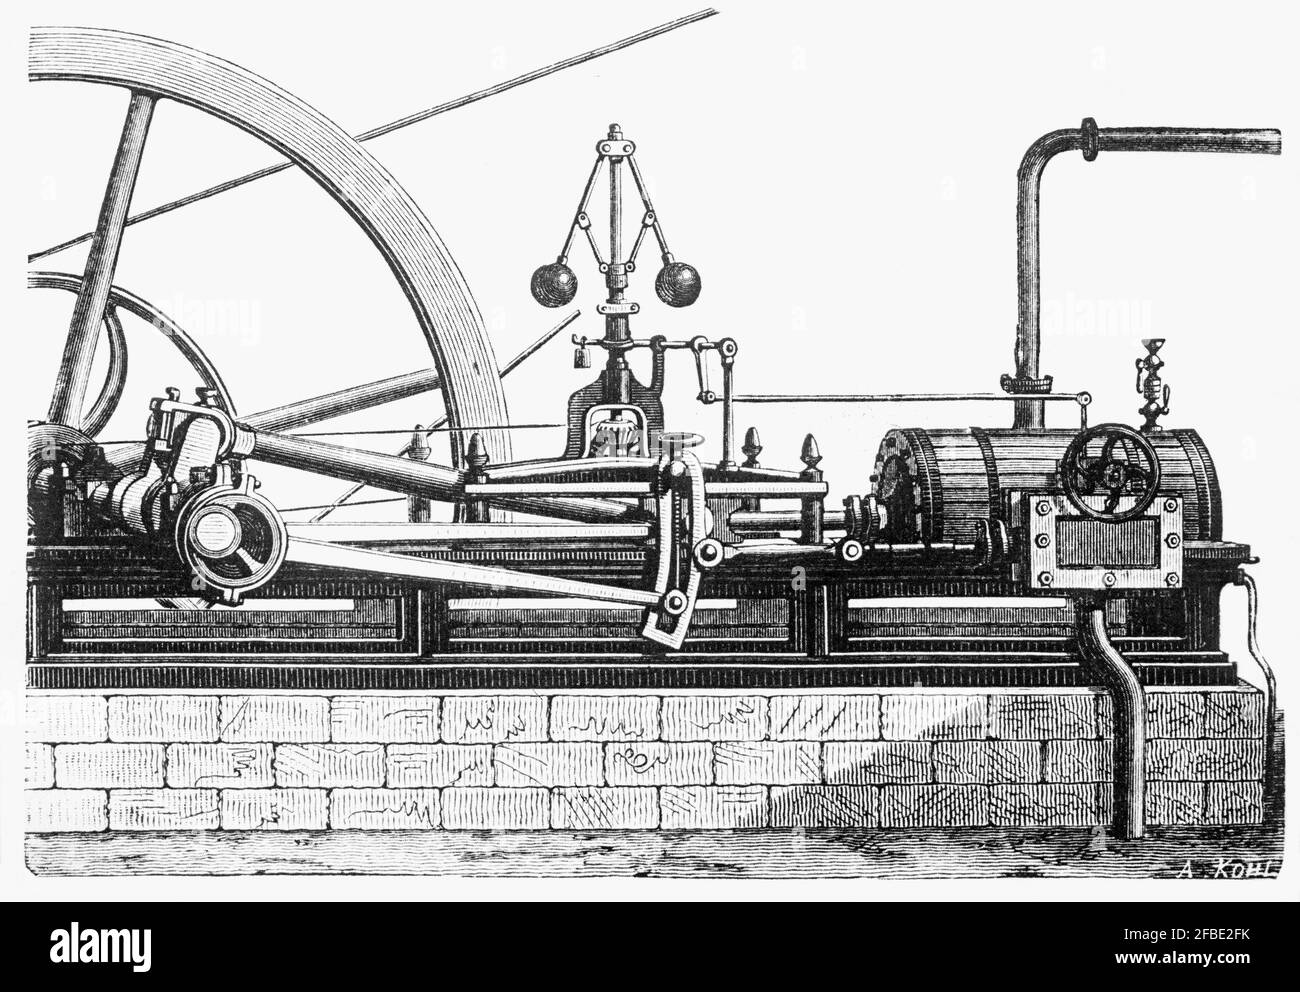 El motor de vapor Early Watt fue una de las fuerzas impulsoras de la Revolución Industrial. James Watt desarrolló el diseño esporádicamente de 1763 a 1775 con el apoyo de Matthew Boulton. El diseño de Watt ahorró tanto combustible en comparación con diseños anteriores que se les otorgó la licencia en función de la cantidad de combustible que ahorrarían. Watt nunca dejó de desarrollar el motor de vapor y sus diseños se convirtieron en sinónimos de motores de vapor, y pasaron muchos años antes de que los diseños significativamente nuevos comenzaran a sustituir el diseño básico de Watt. Foto de stock